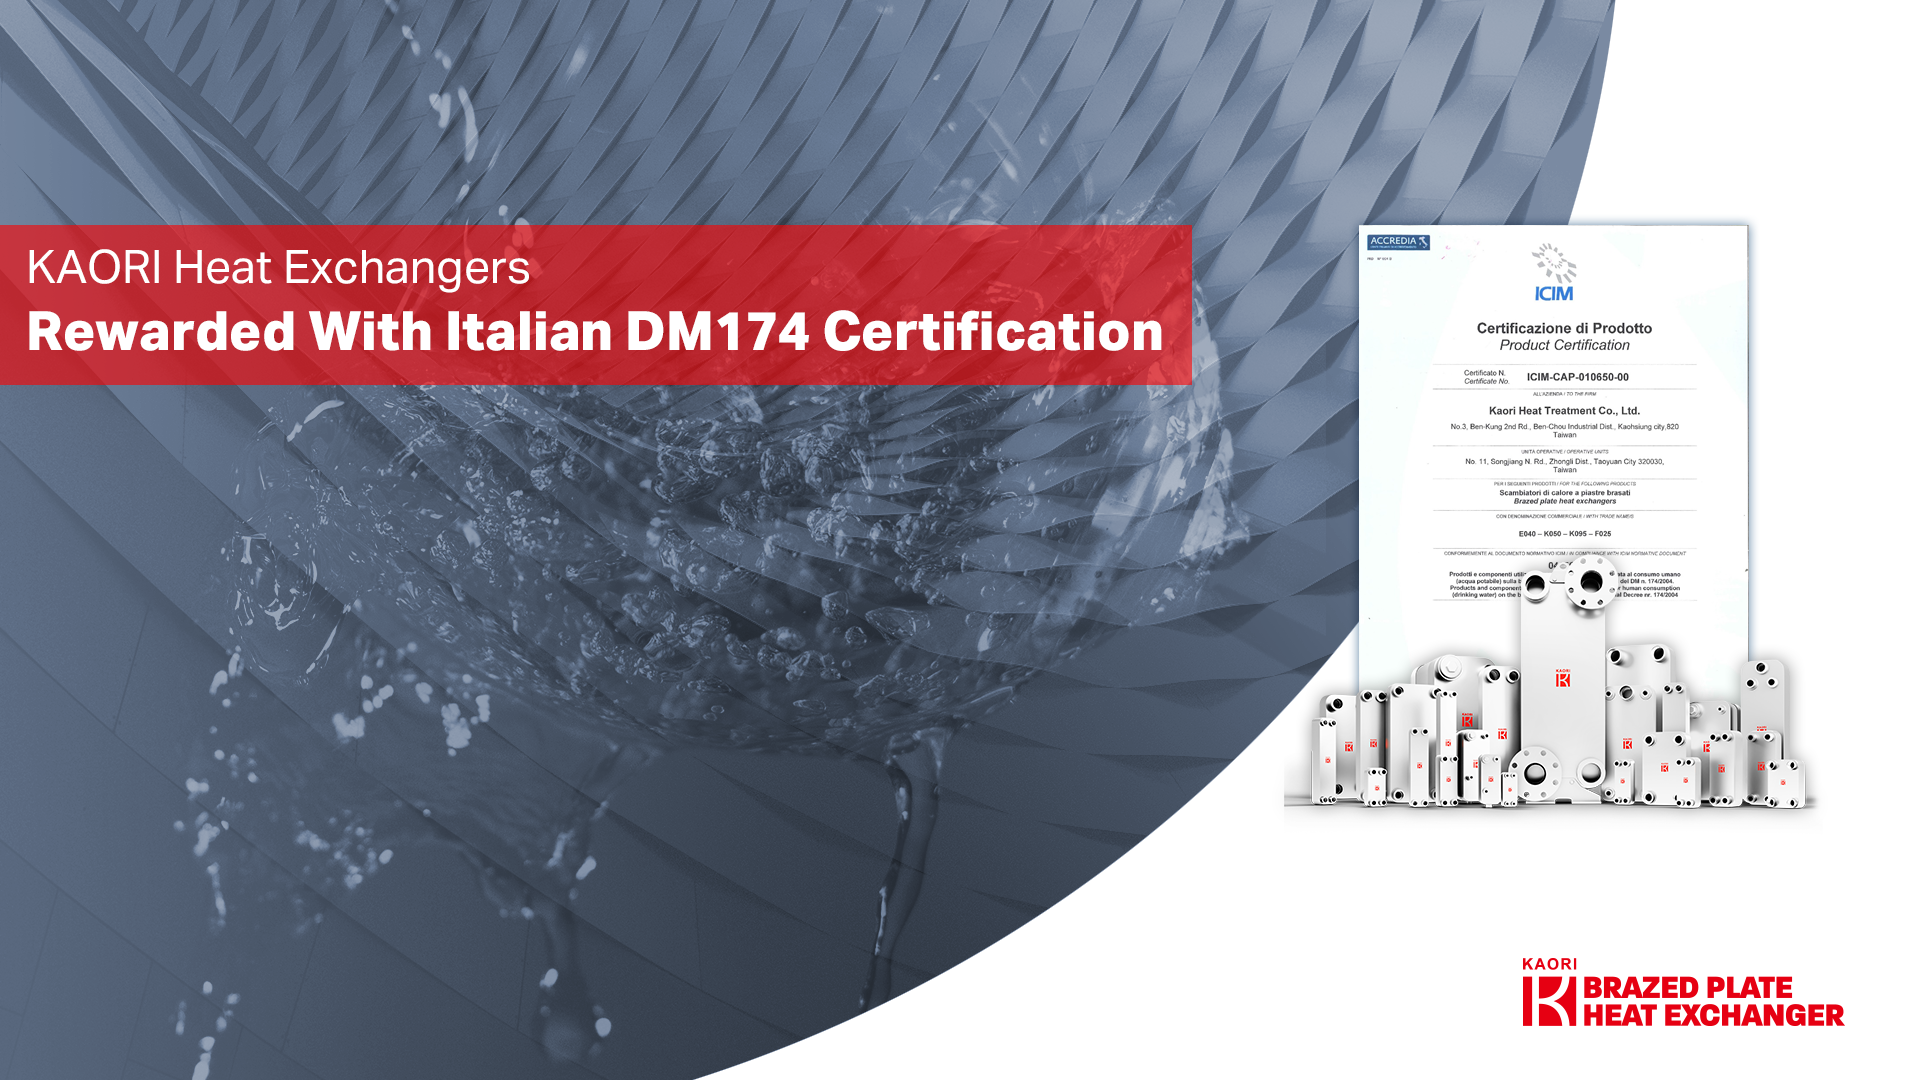 高力板式熱交換器榮獲義大利DM 174水質(飲用水)認證